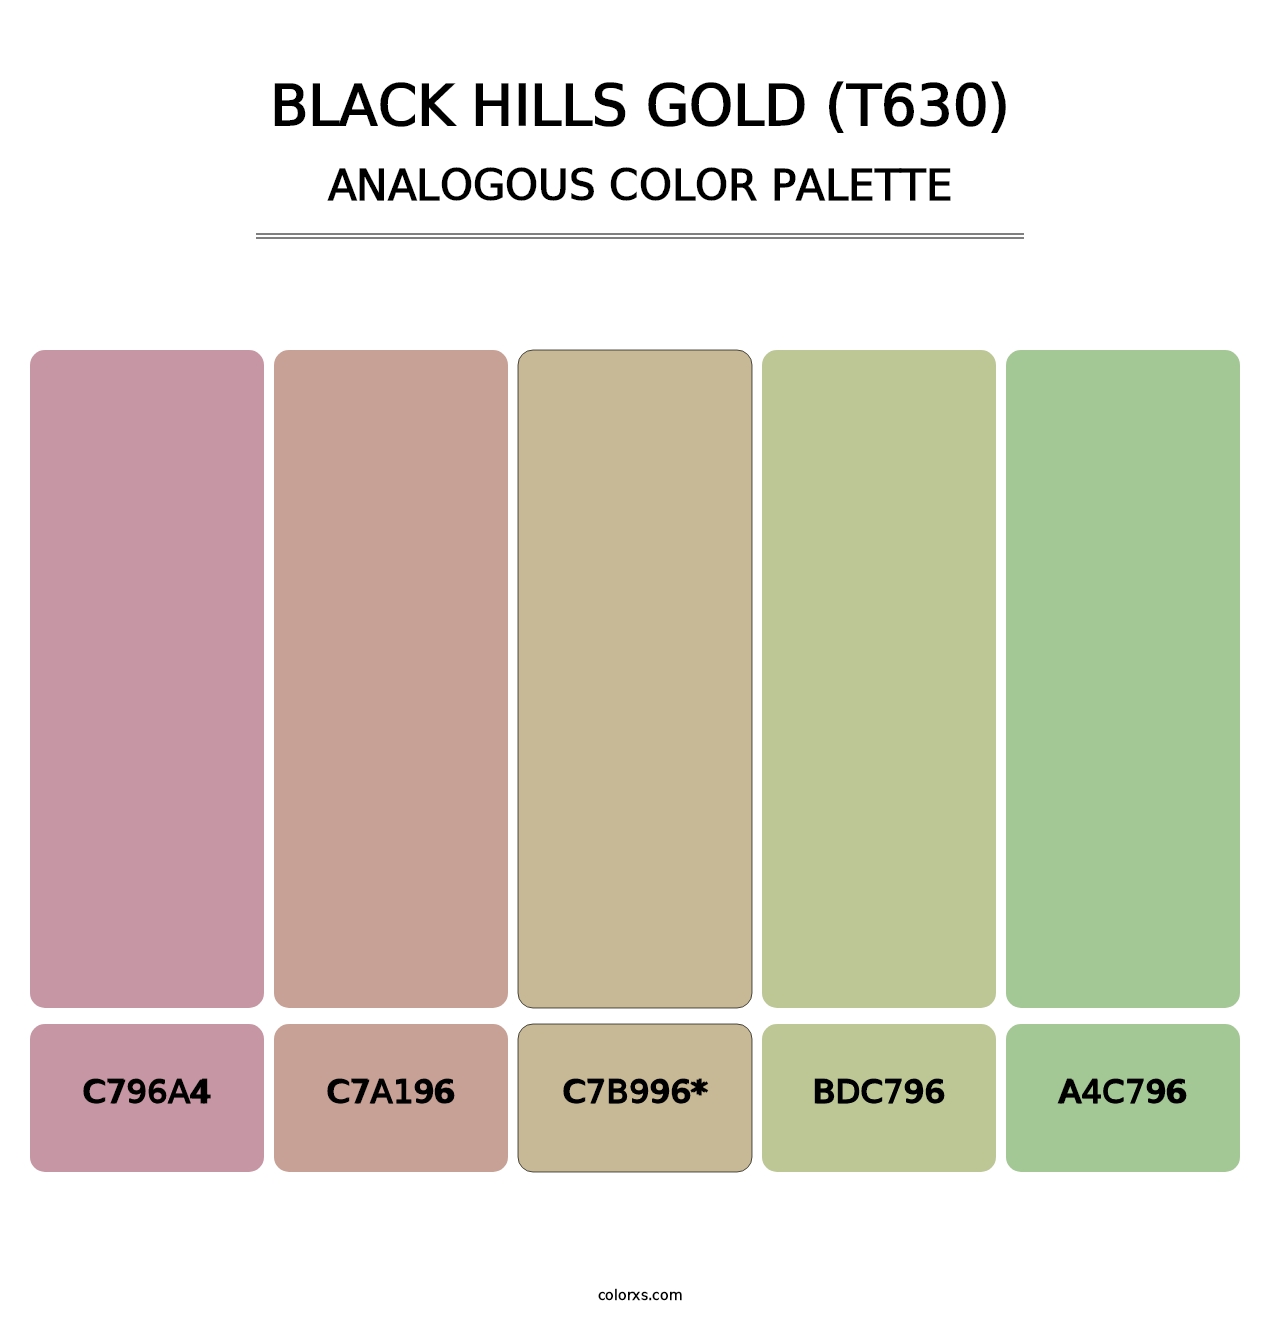 Black Hills Gold (T630) - Analogous Color Palette